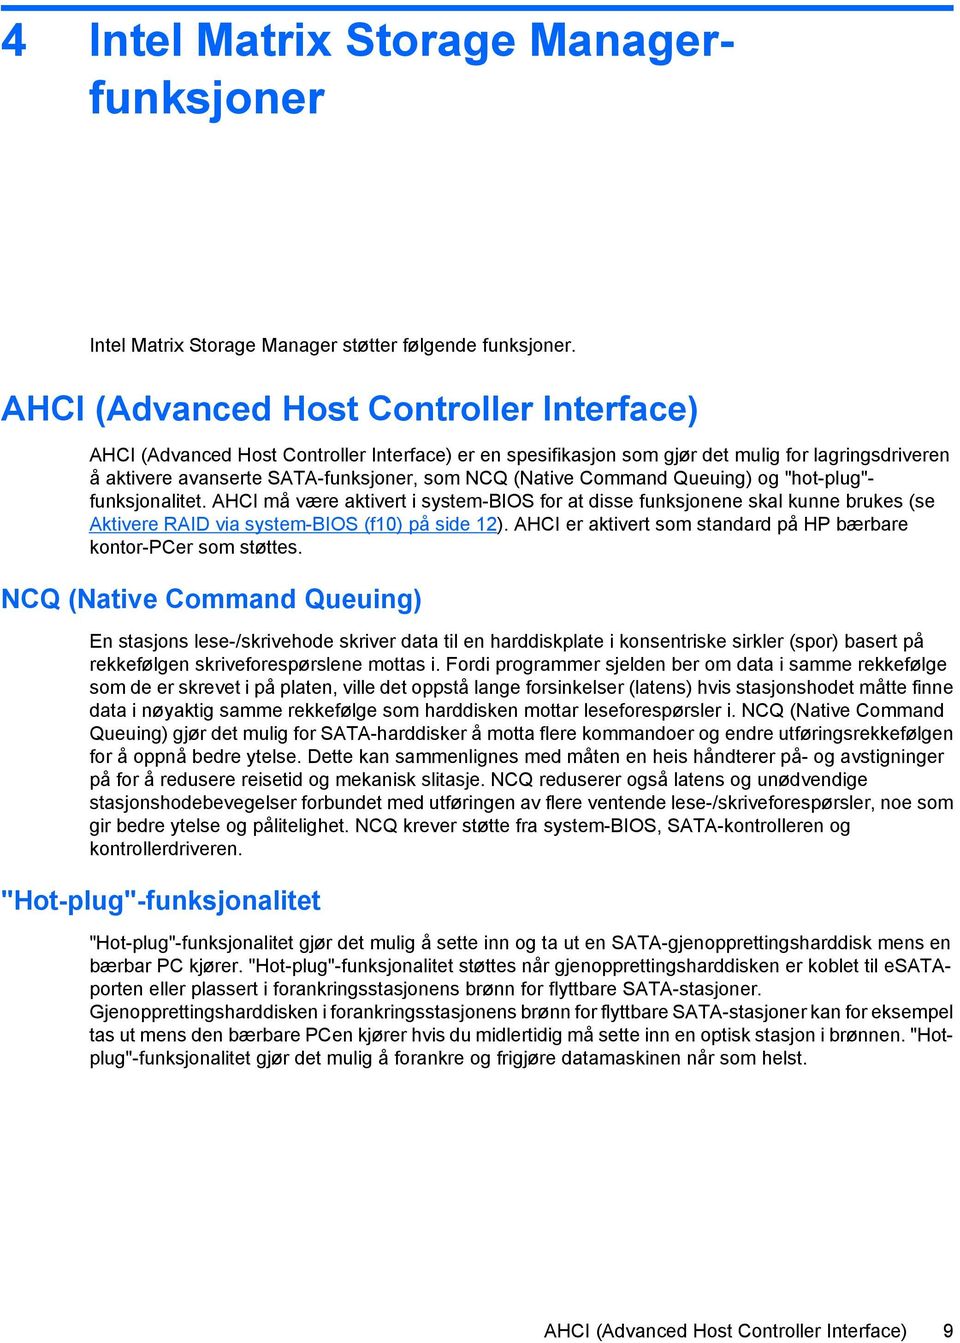 Command Queuing) og "hot-plug"- funksjonalitet. AHCI må være aktivert i system-bios for at disse funksjonene skal kunne brukes (se Aktivere RAID via system-bios (f10) på side 12).